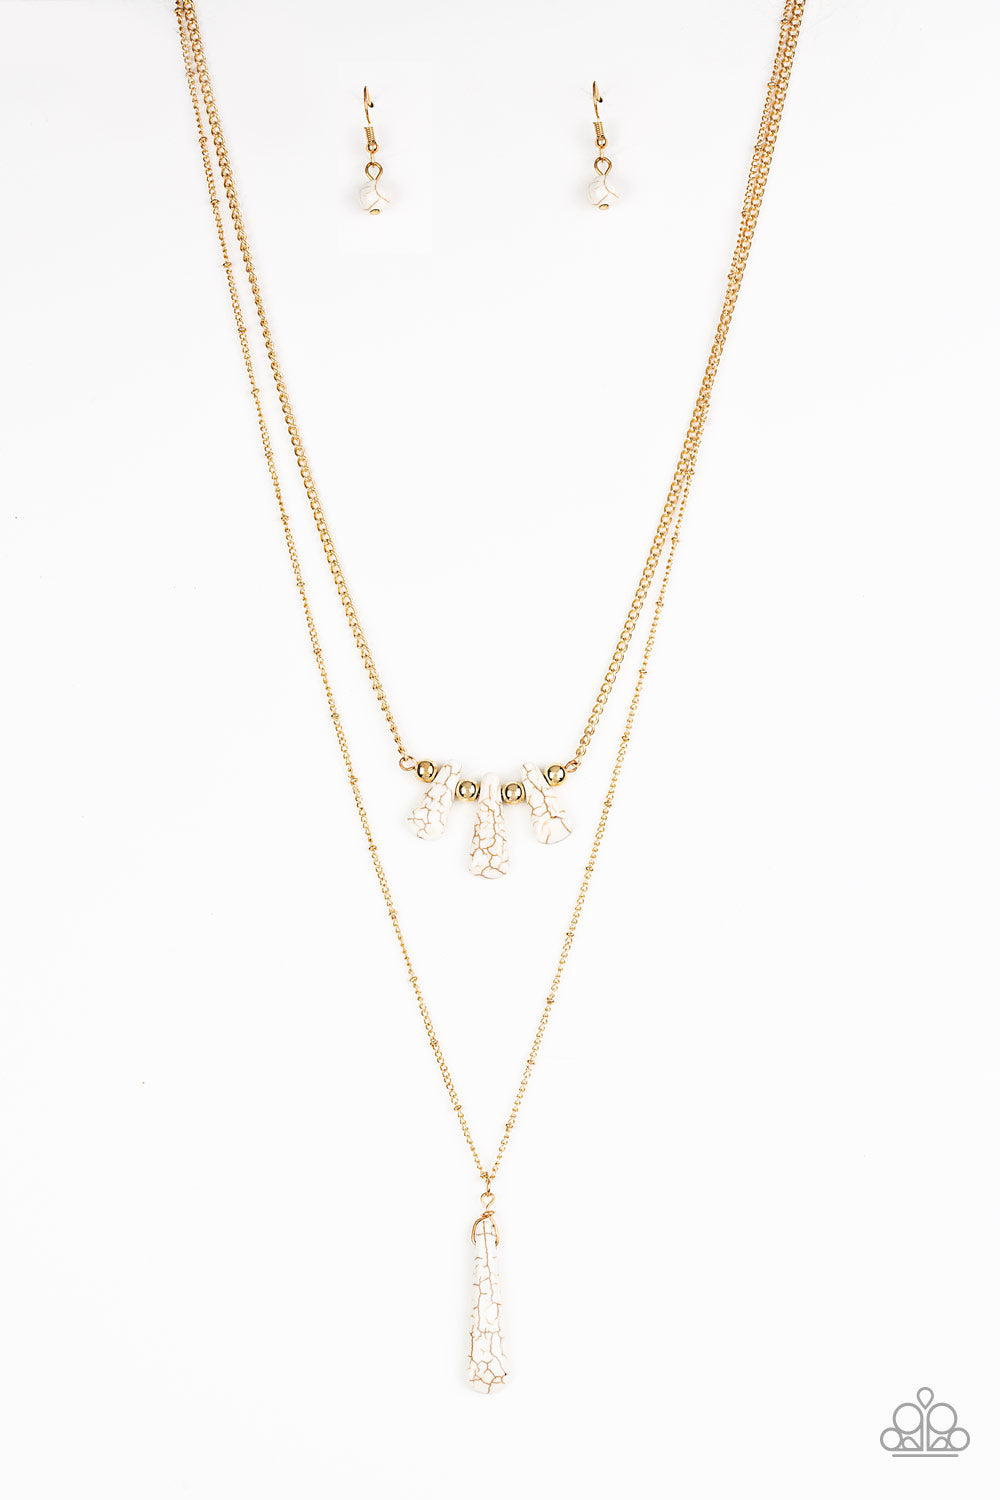 Basic Groundwork - Gold & White Stone Necklace Set - Princess Glam Shop